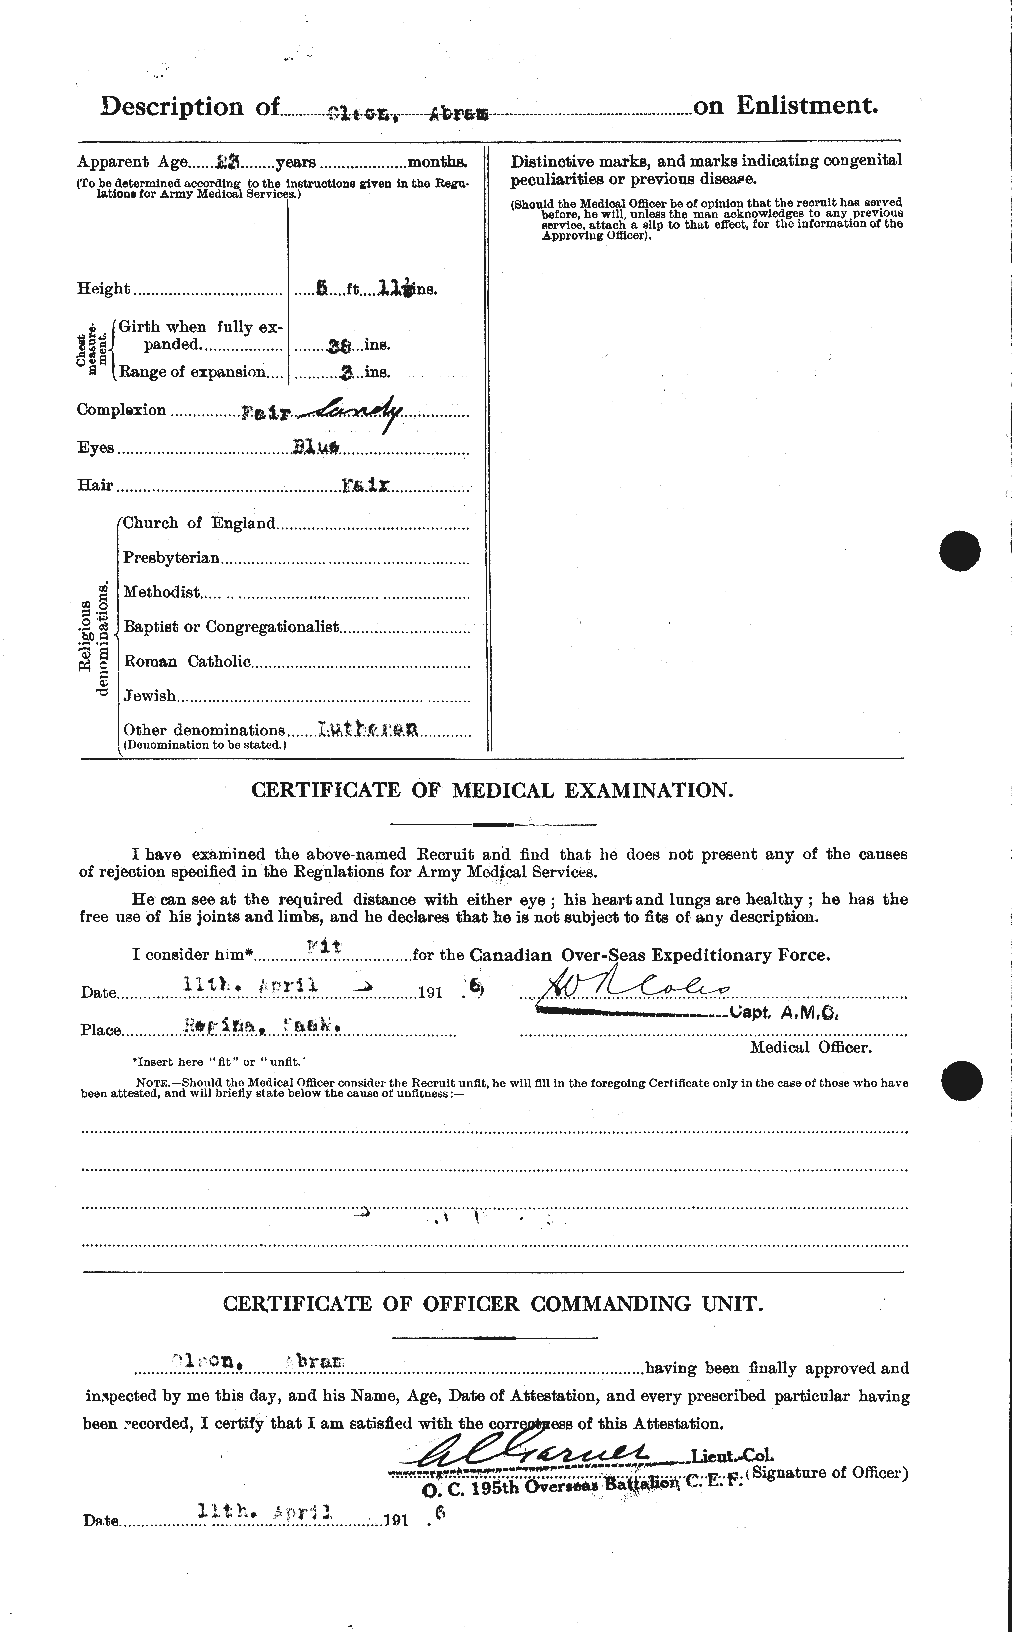 Dossiers du Personnel de la Première Guerre mondiale - CEC 557122b